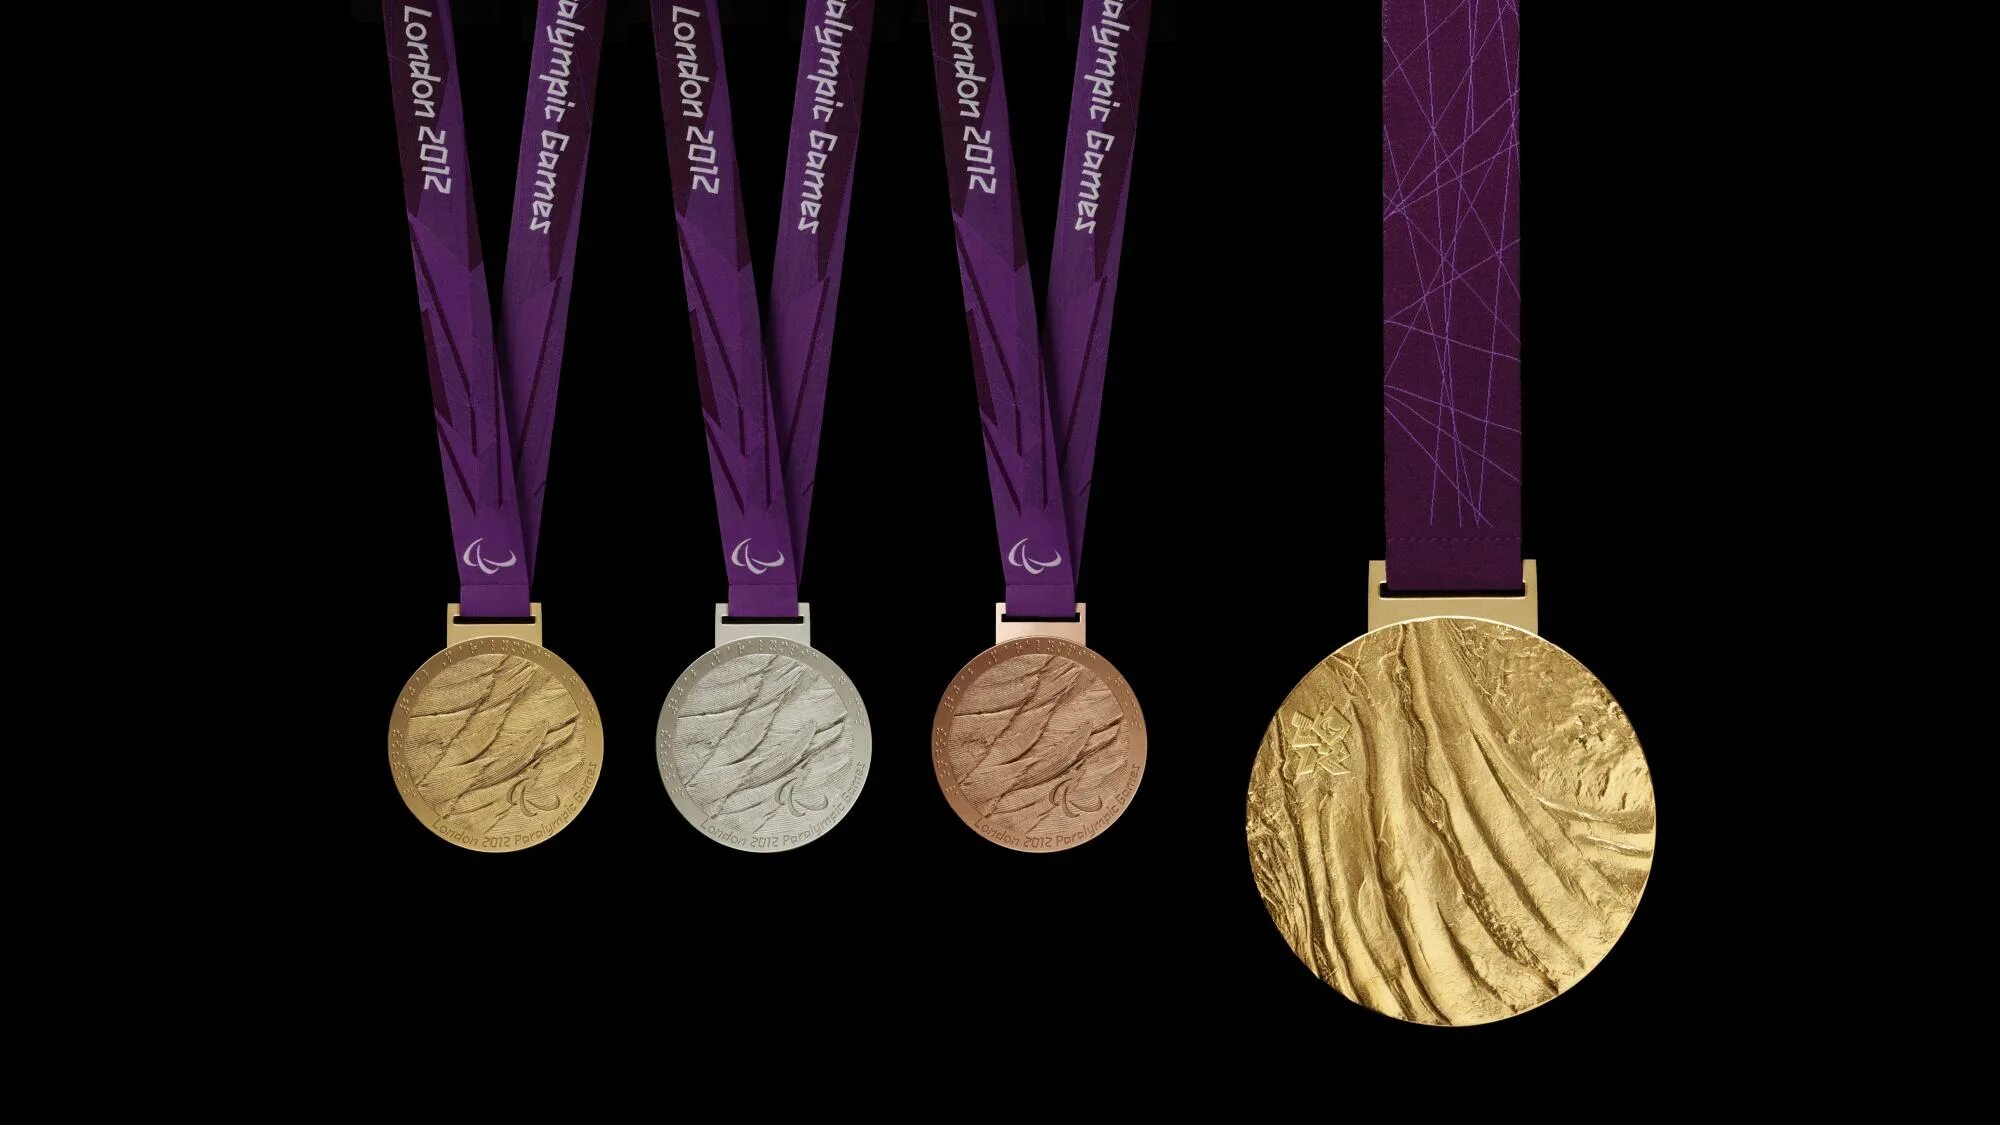 Medal 2012. Лондон Паралимпийские игры медали 2012. Олимпийская медаль Лондон 2012. Золотая медаль Паралимпийских игр. Медали олимпиады 2012 Лондон.